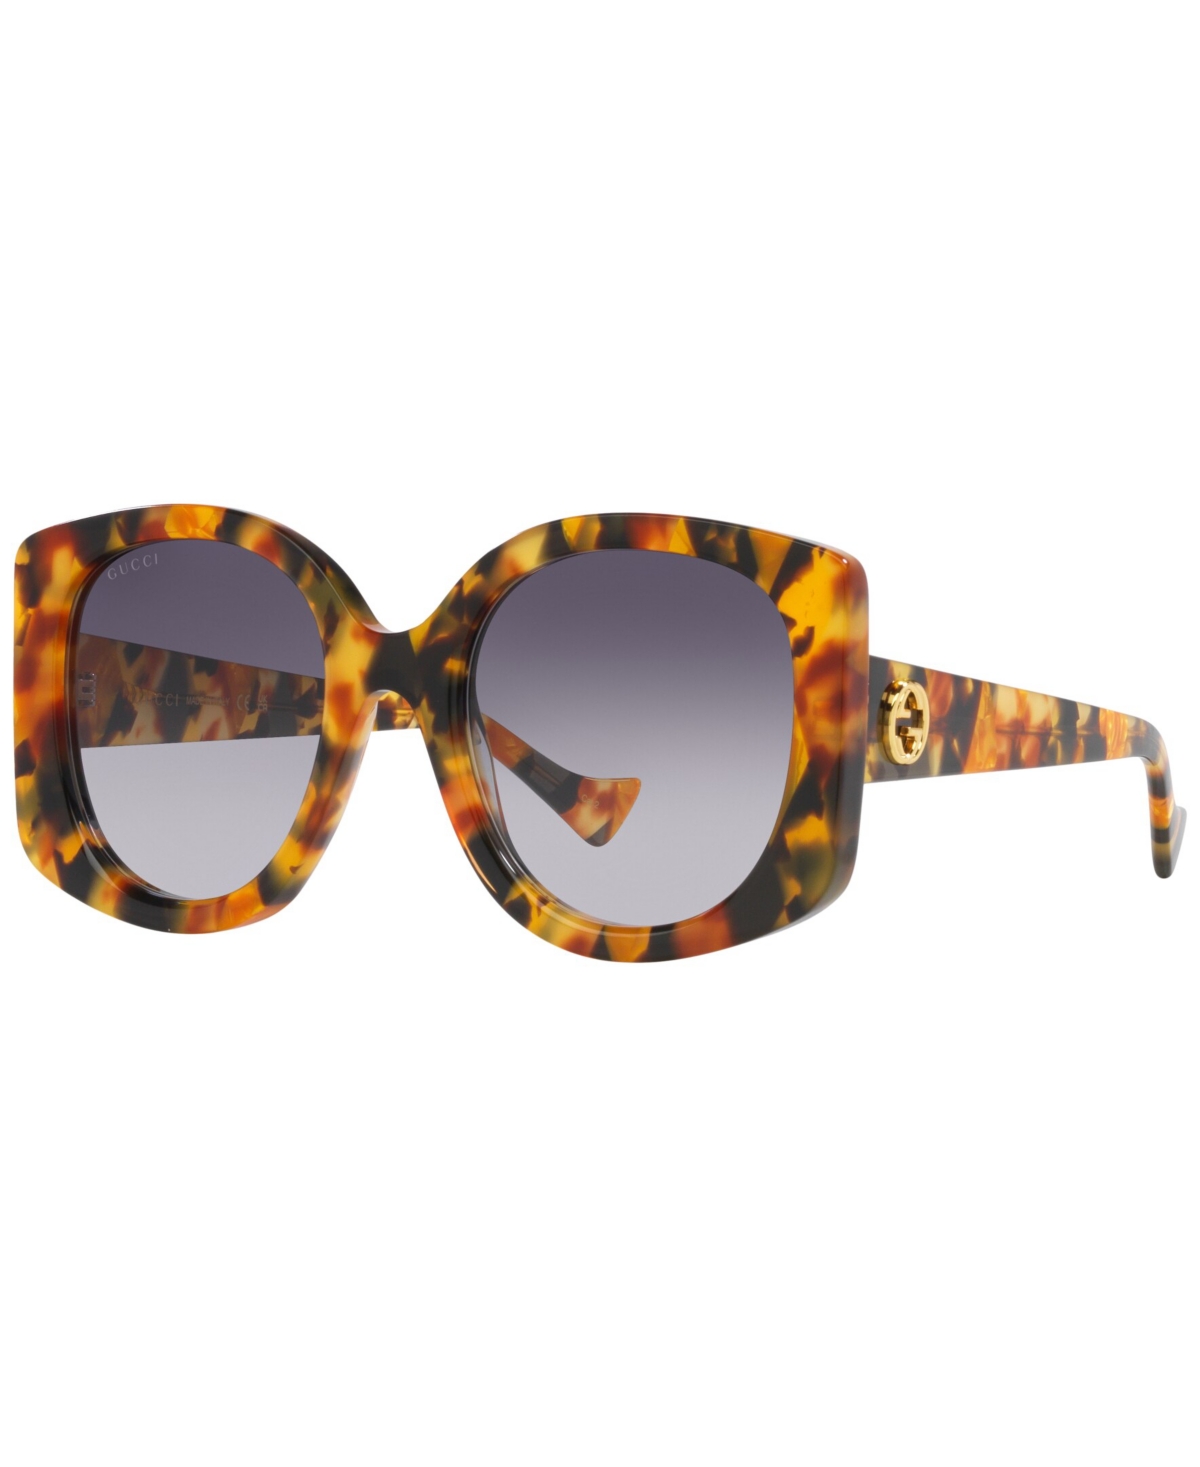 Gucci Women's Sunglasses, Gg1257s In Tortoise Silver-tone